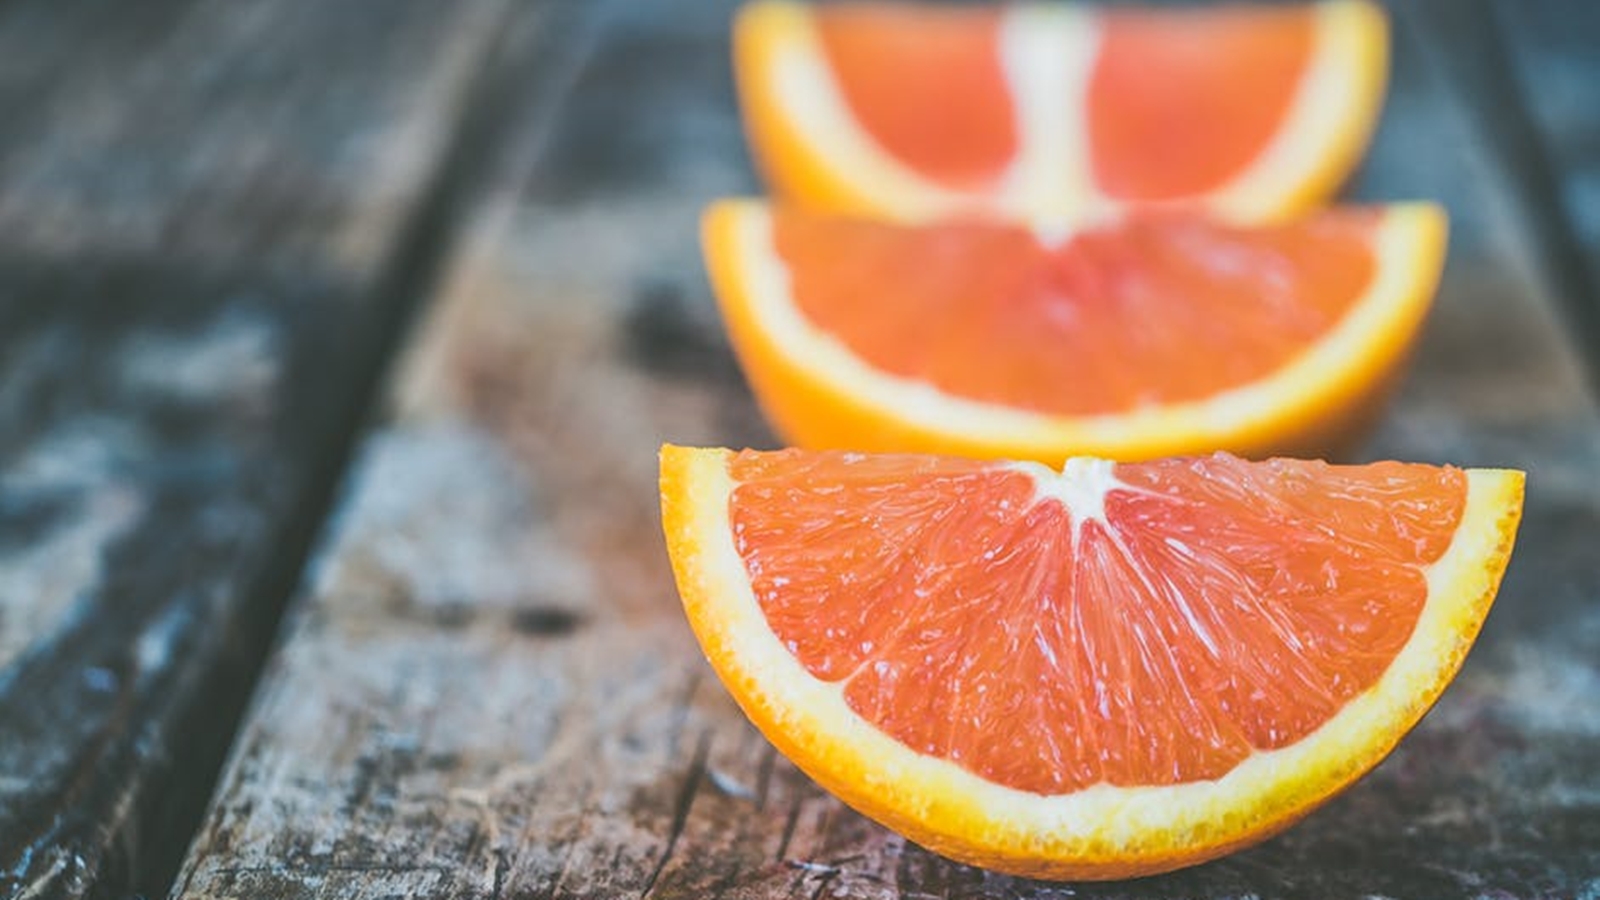 Kandungan Vitamin C pada Stroberi Lebih Banyak dari Jeruk